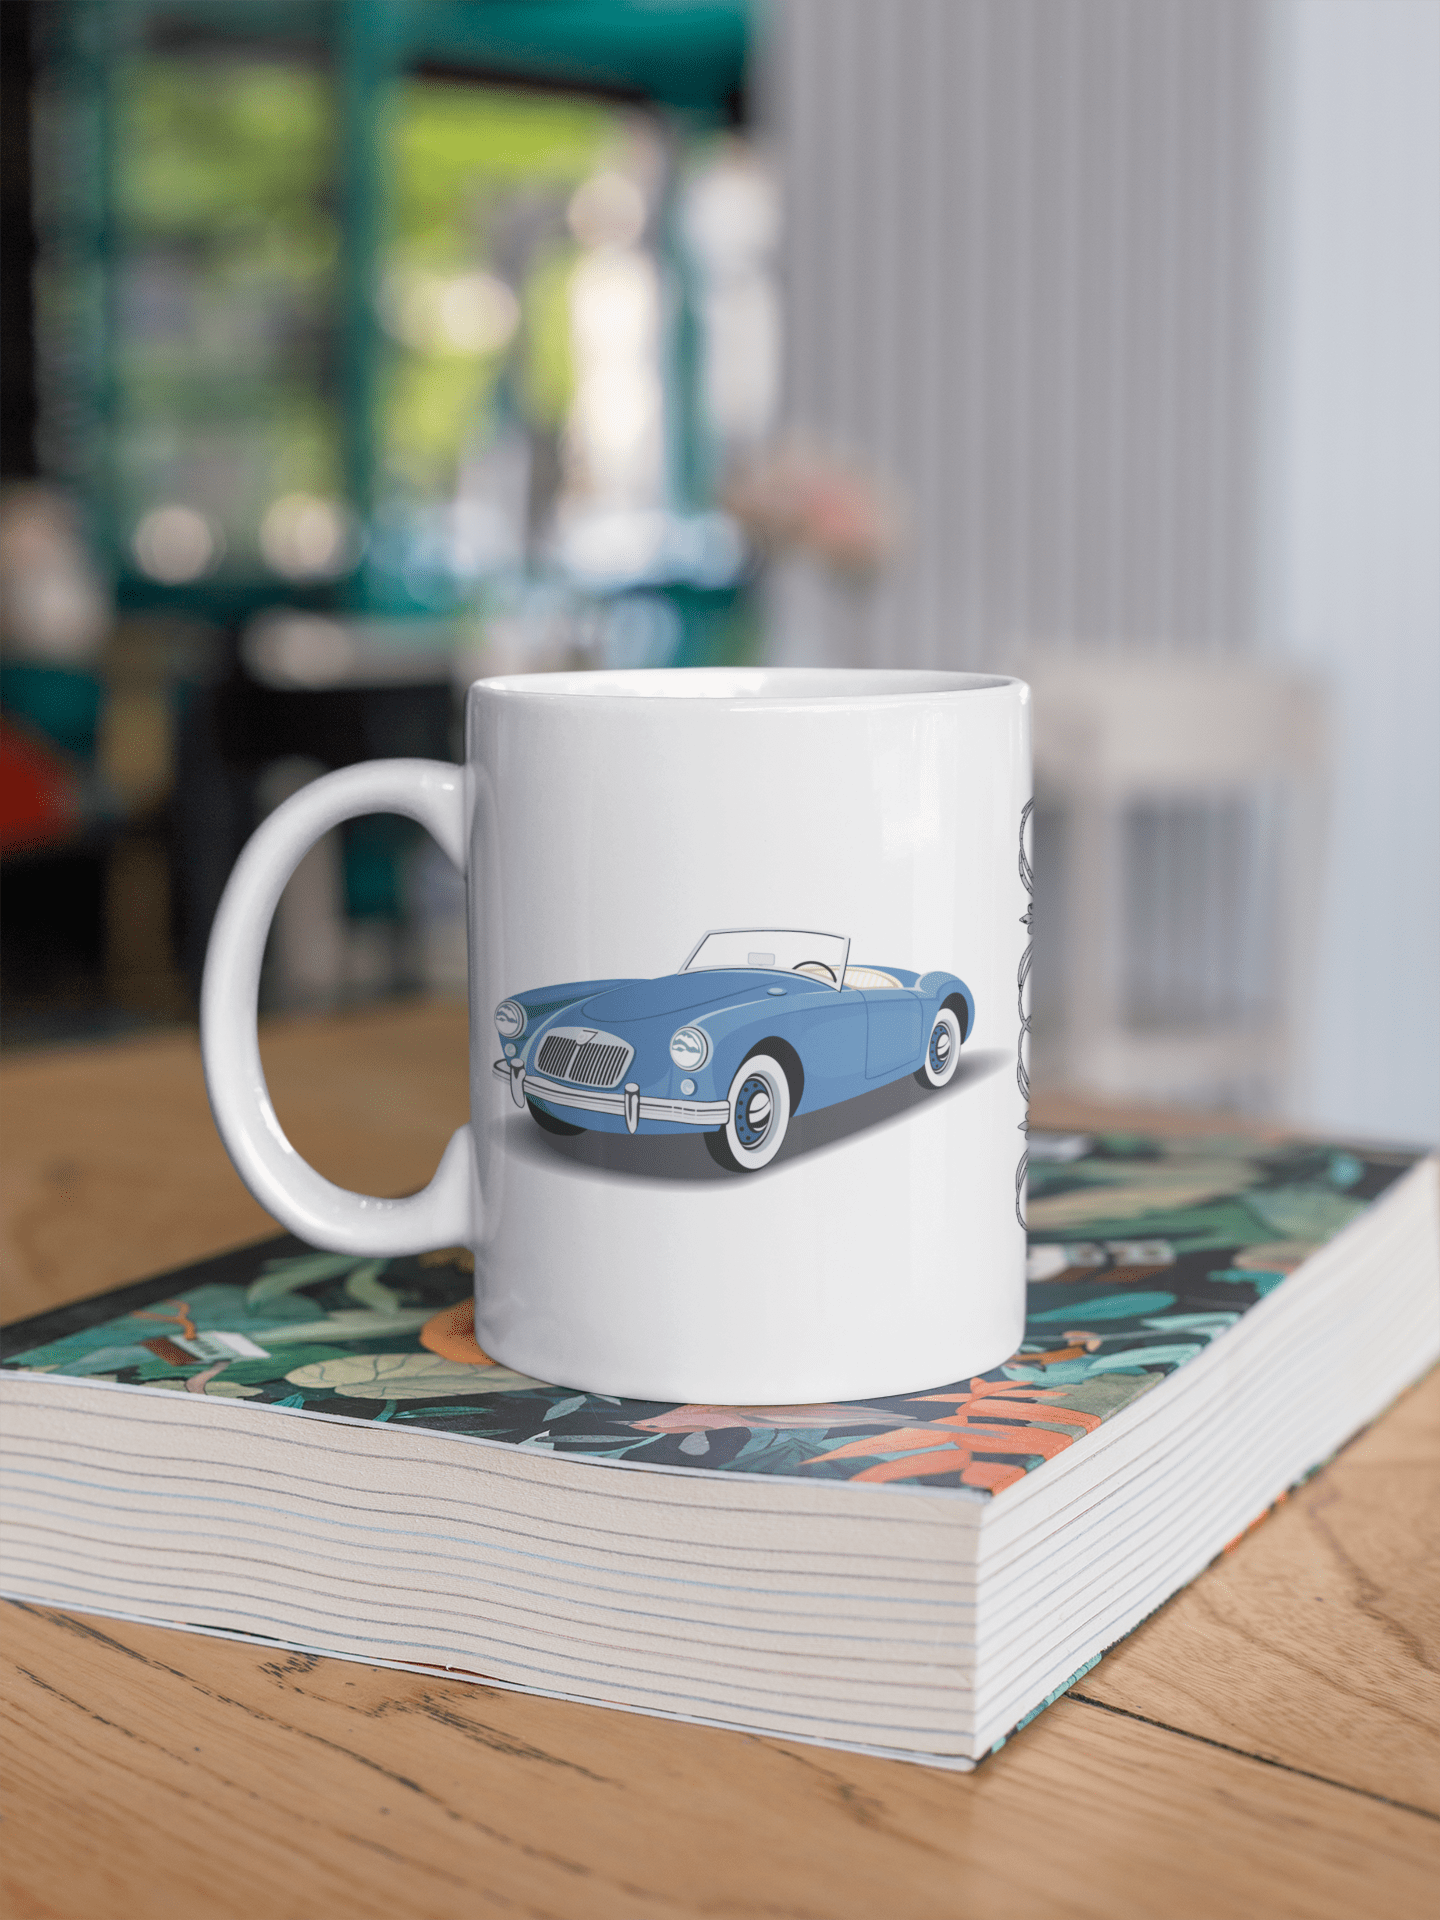 Old Open Vintage Car printed coffee mug